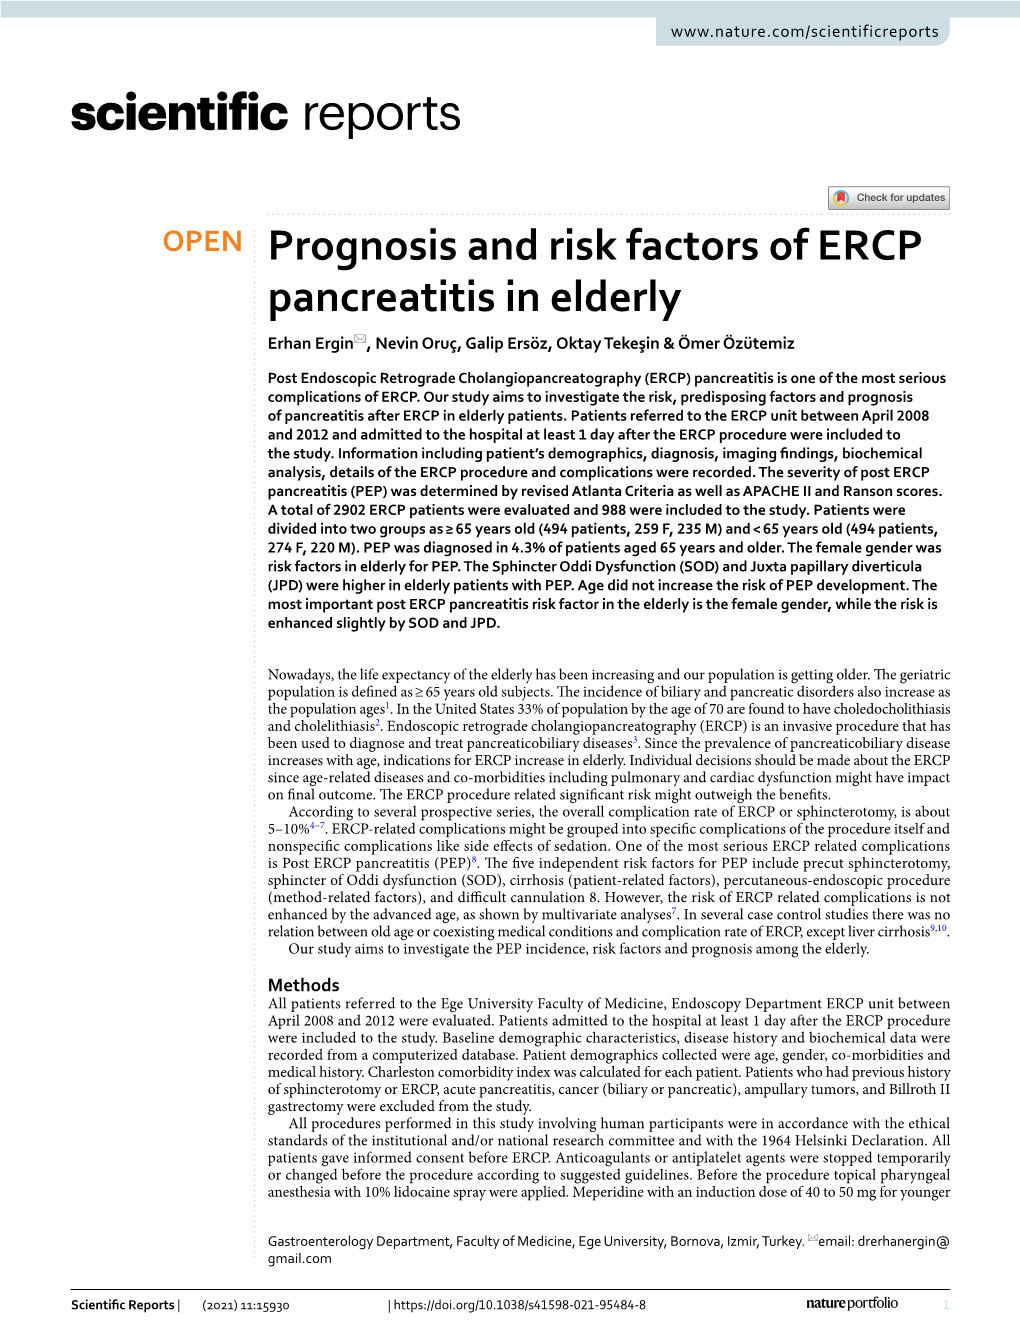 Prognosis and Risk Factors of ERCP Pancreatitis in Elderly Erhan Ergin*, Nevin Oruç, Galip Ersöz, Oktay Tekeşin & Ömer Özütemiz